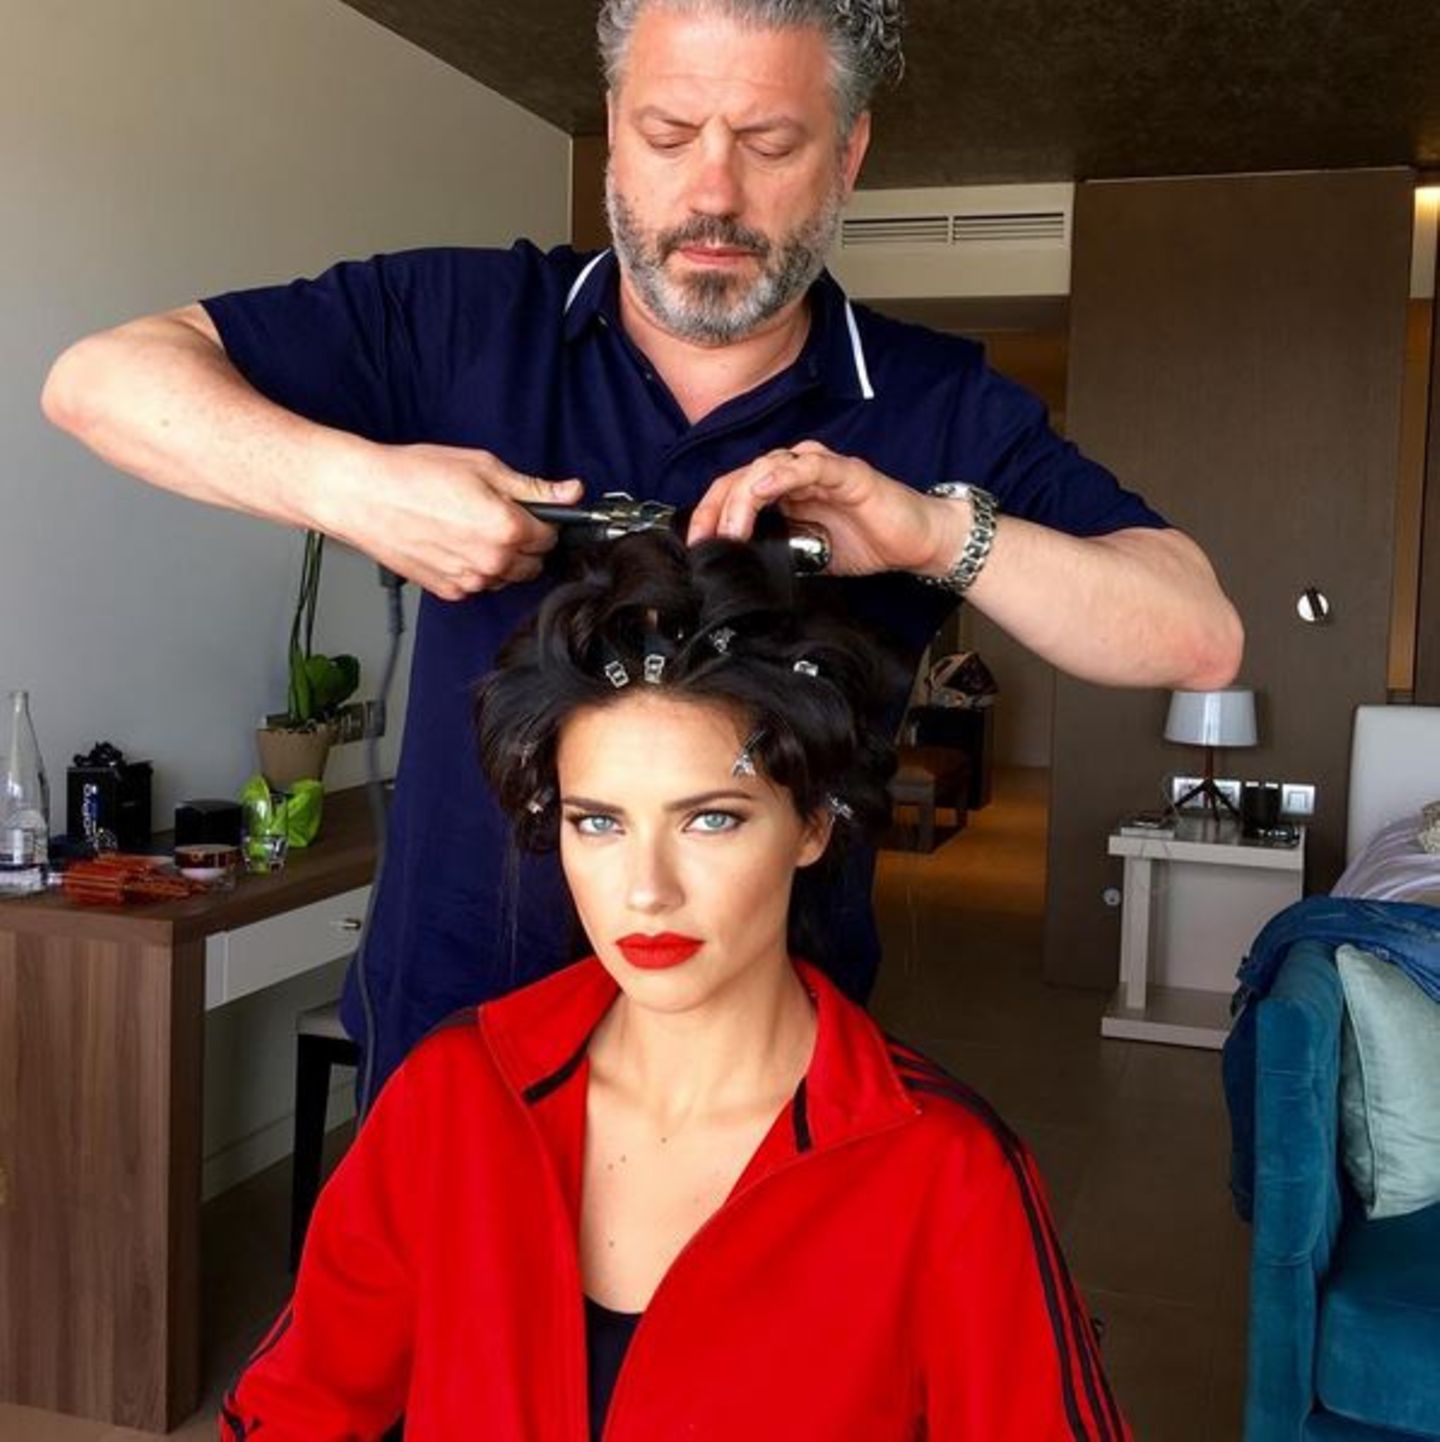 Fast fertig! Adriana Lima lässt noch schnell die Haare frisieren vor dem großen Auftritt auf dem roten Teppich in Cannes.